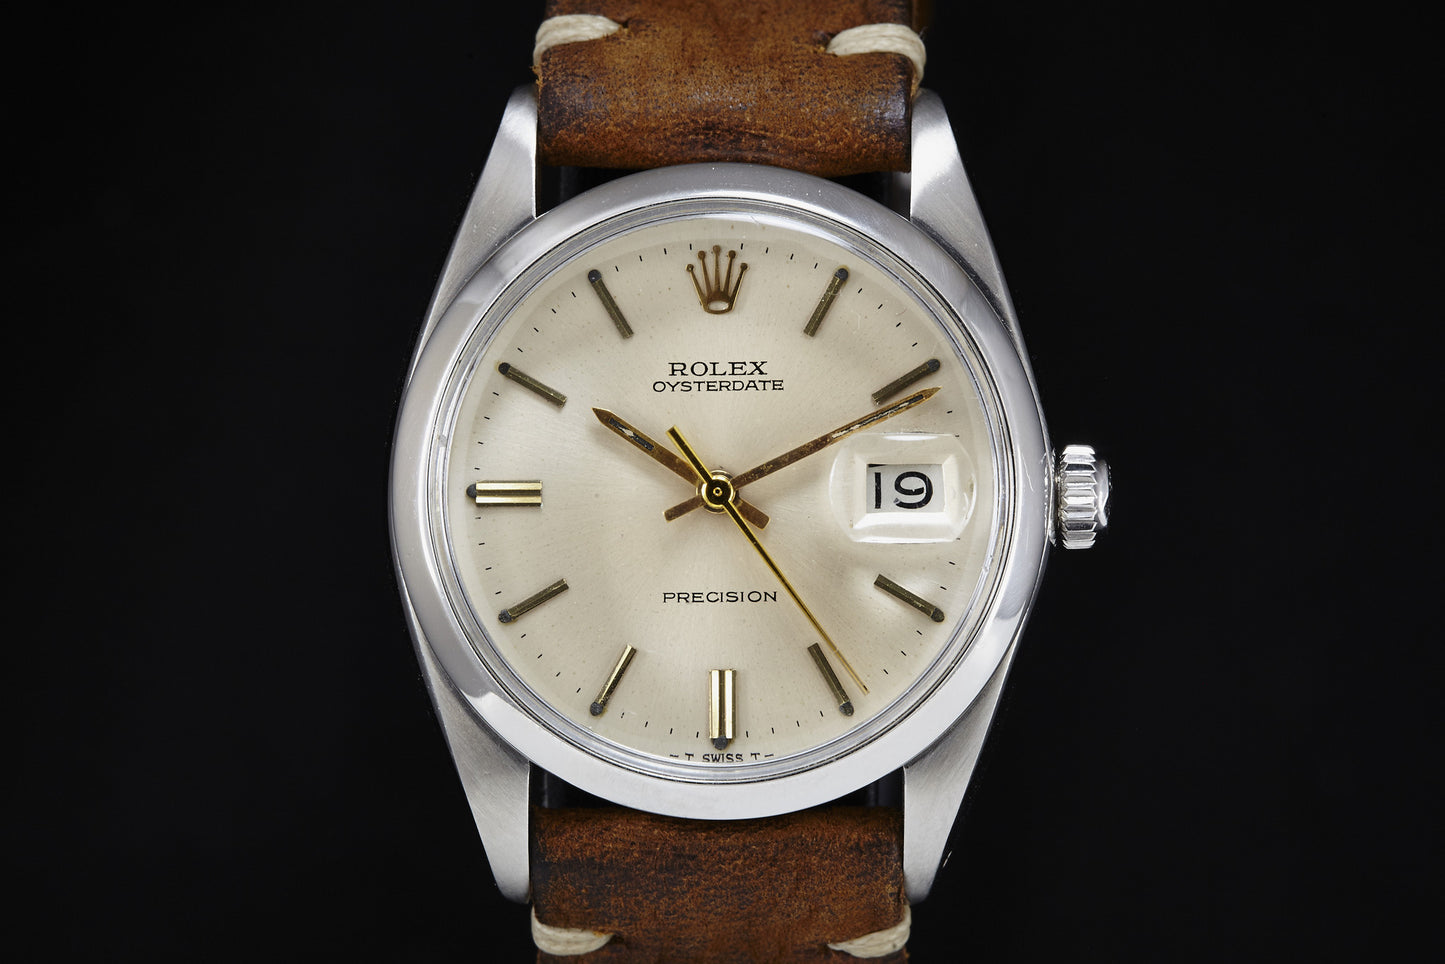 Rolex Oysterdate Precision - 1966